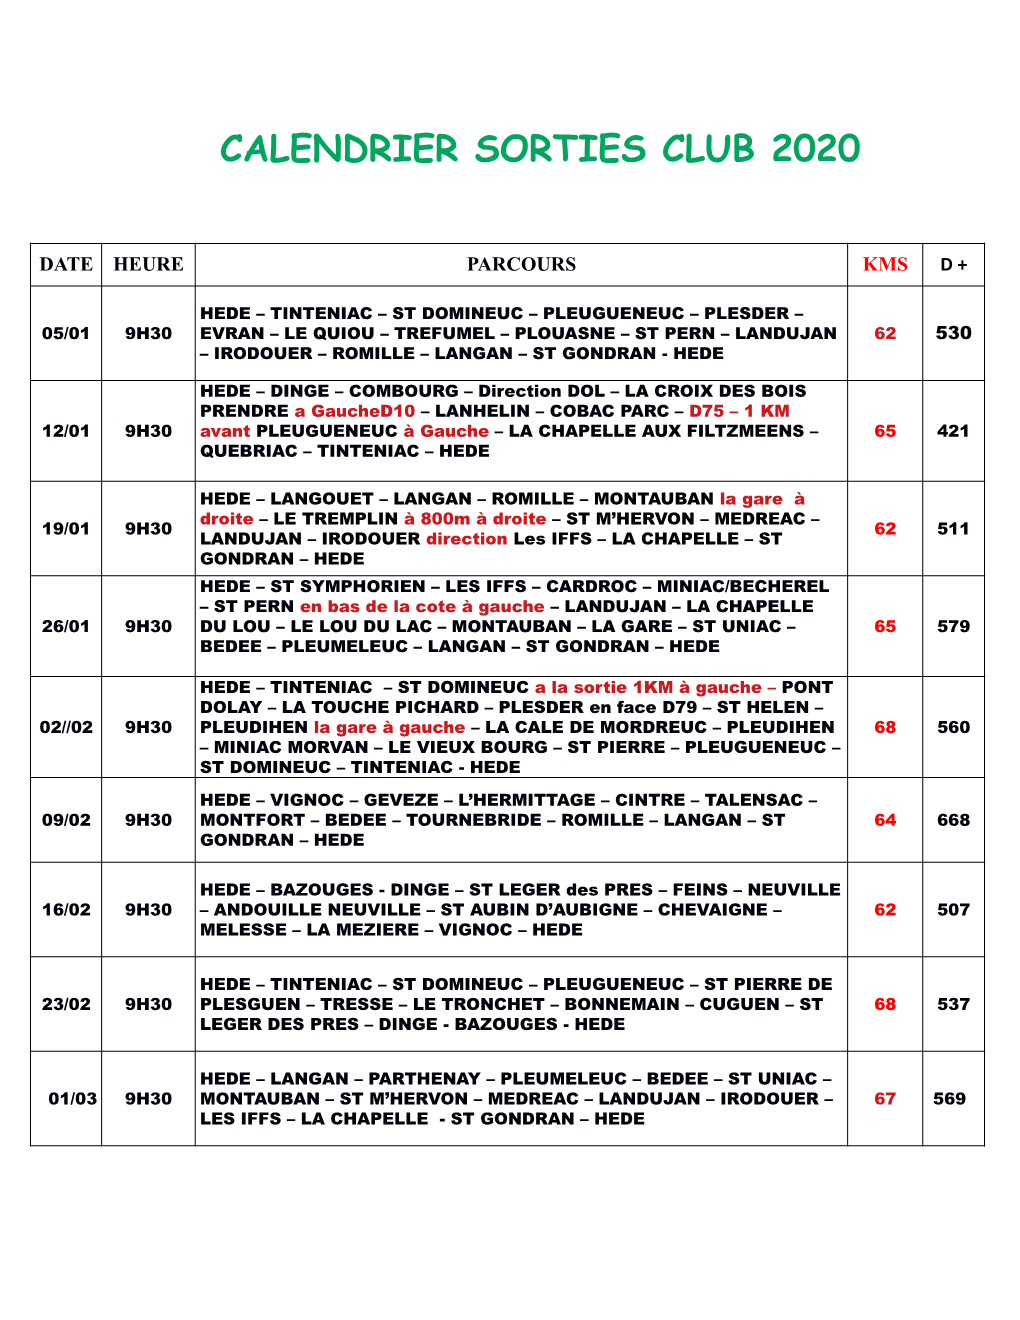 Calendrier Sorties Club 2020